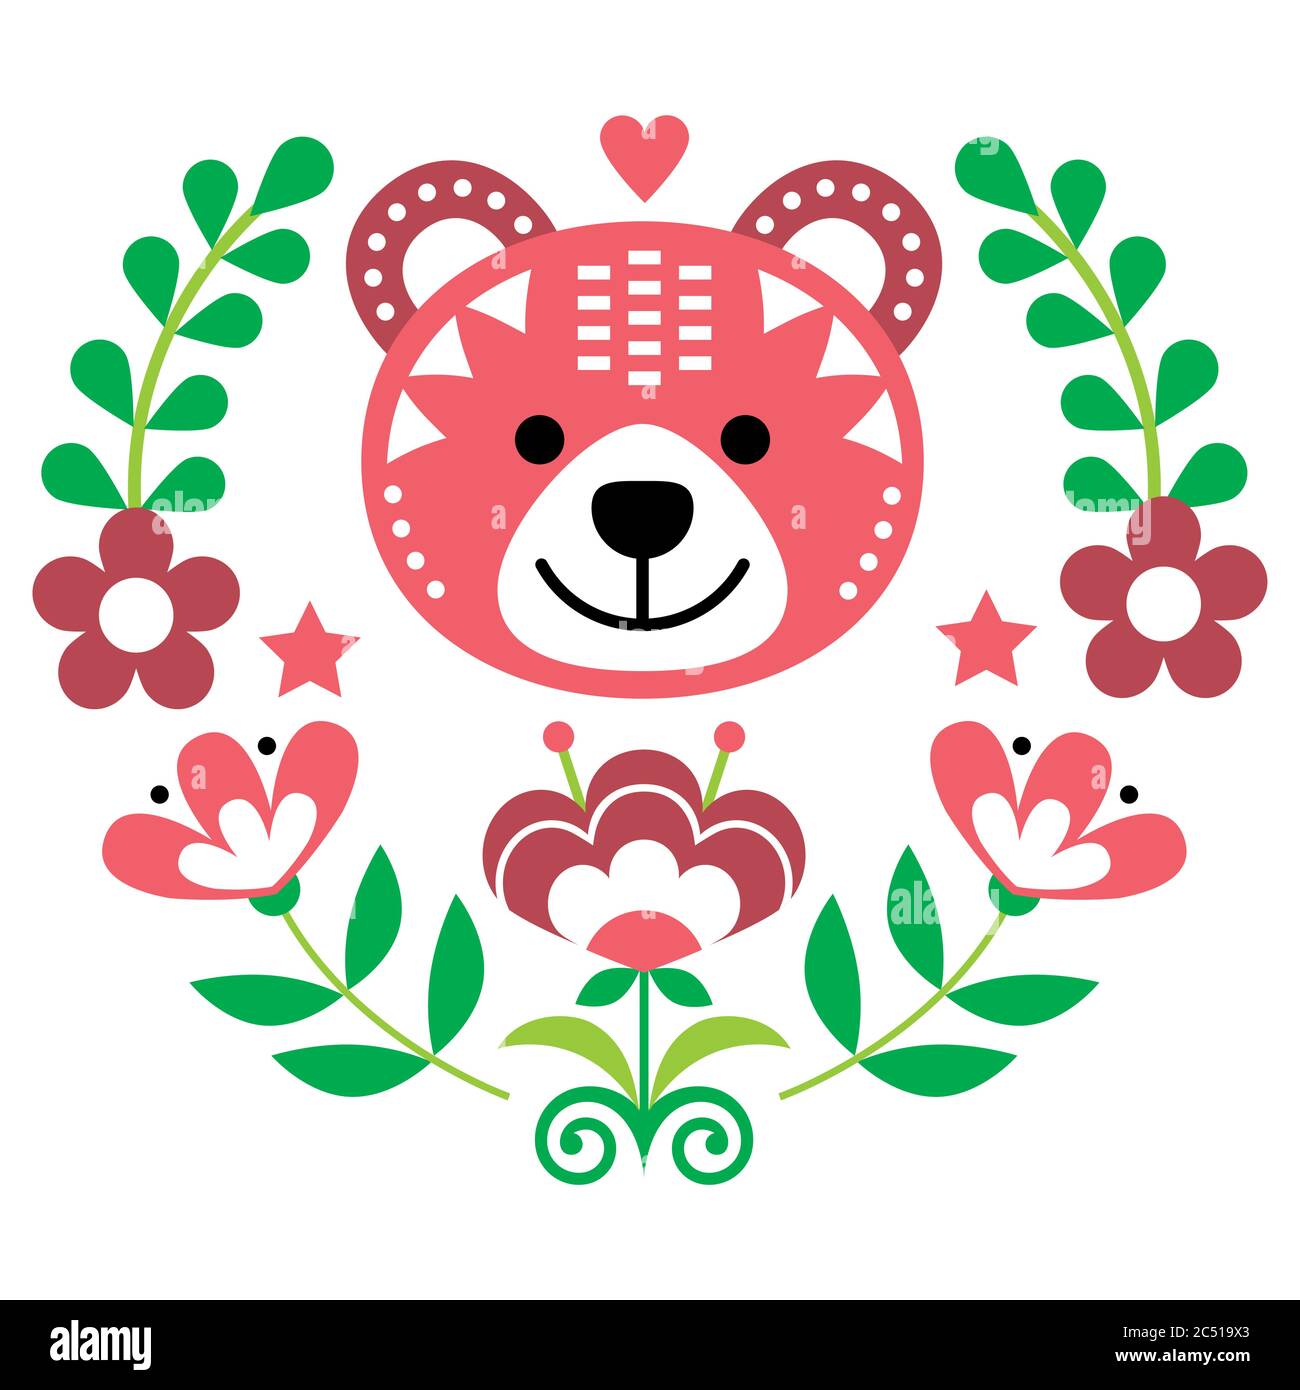 Skandinavische Bär Volkskunst Vektor rundes Muster mit Blumen und Kranz, nordische Blumen Grußkarte oder Einladung in rosa und grün Stock Vektor